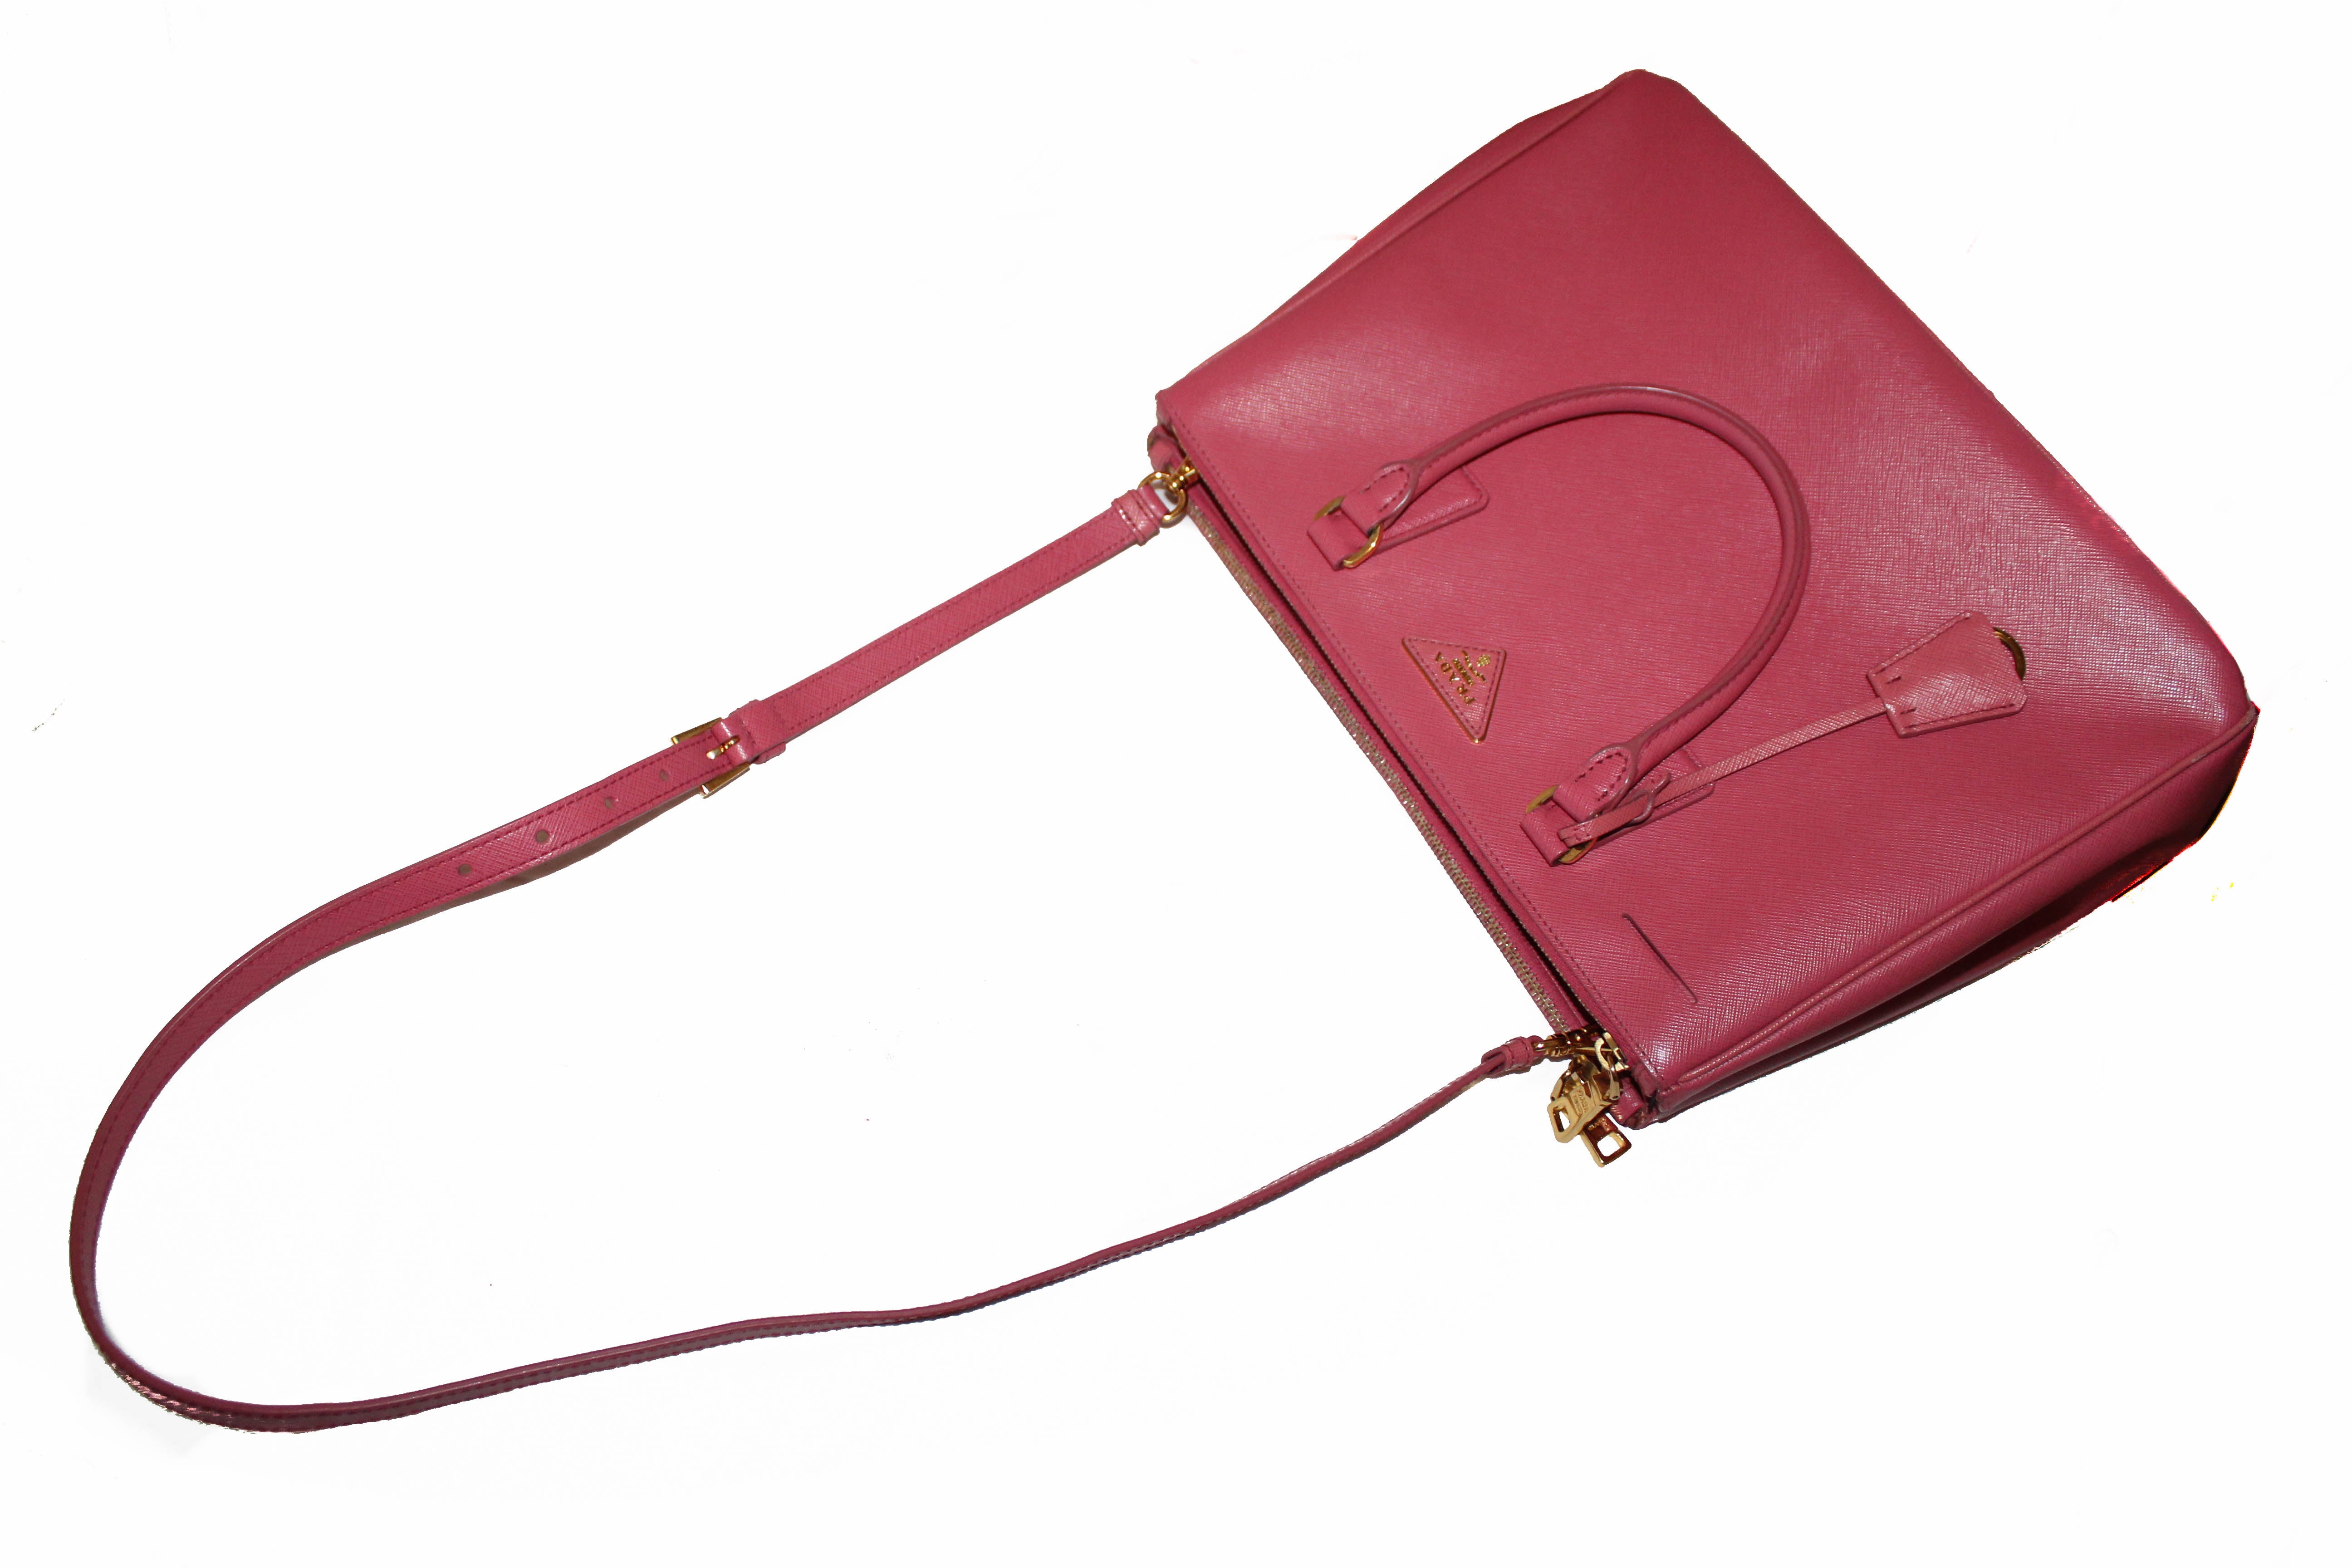 Prada Medium Antiqu Handle Bag 1BB092_UVL_F0E18_V_T2O, Pink, One Size